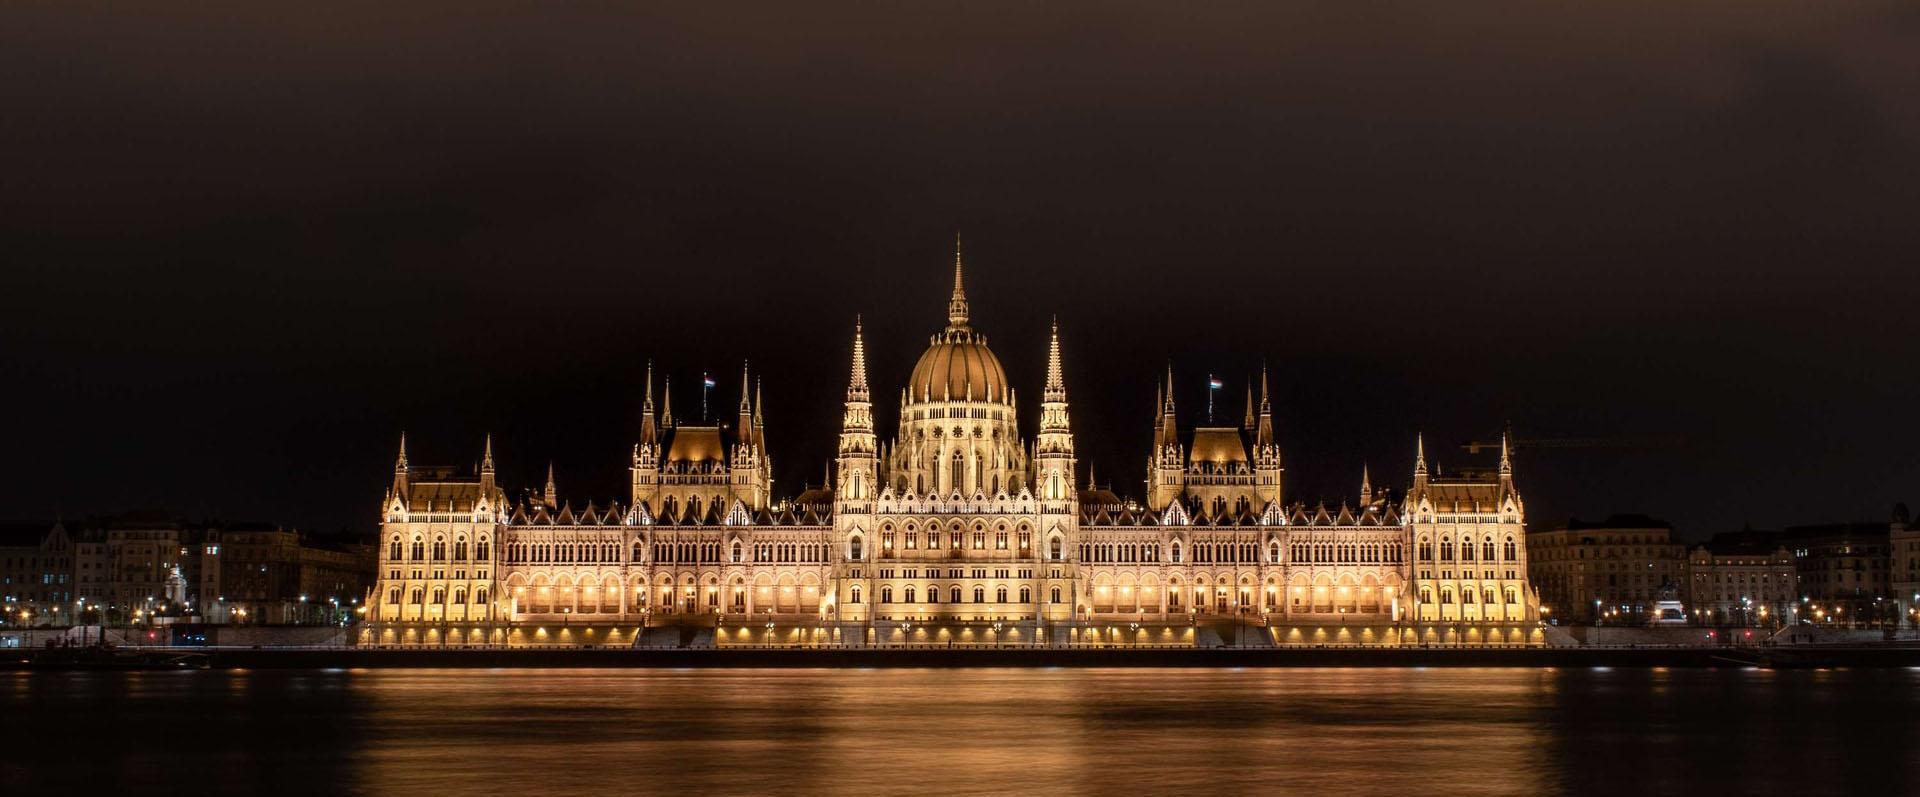 Parlement hongrois de nuit